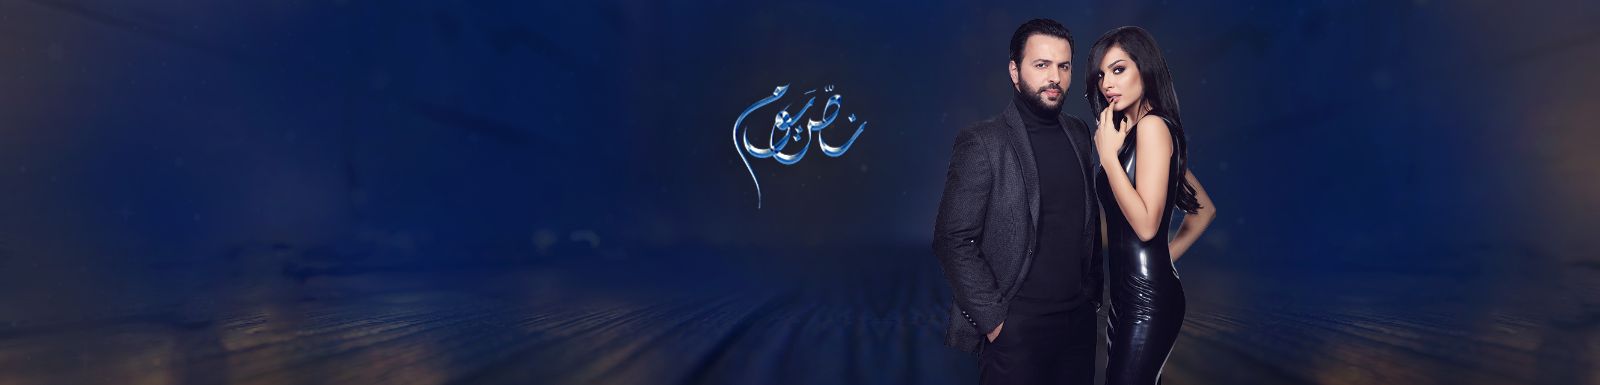 قصة وأحداث مسلسل نص يوم رمضان 2016 على قناة mbc